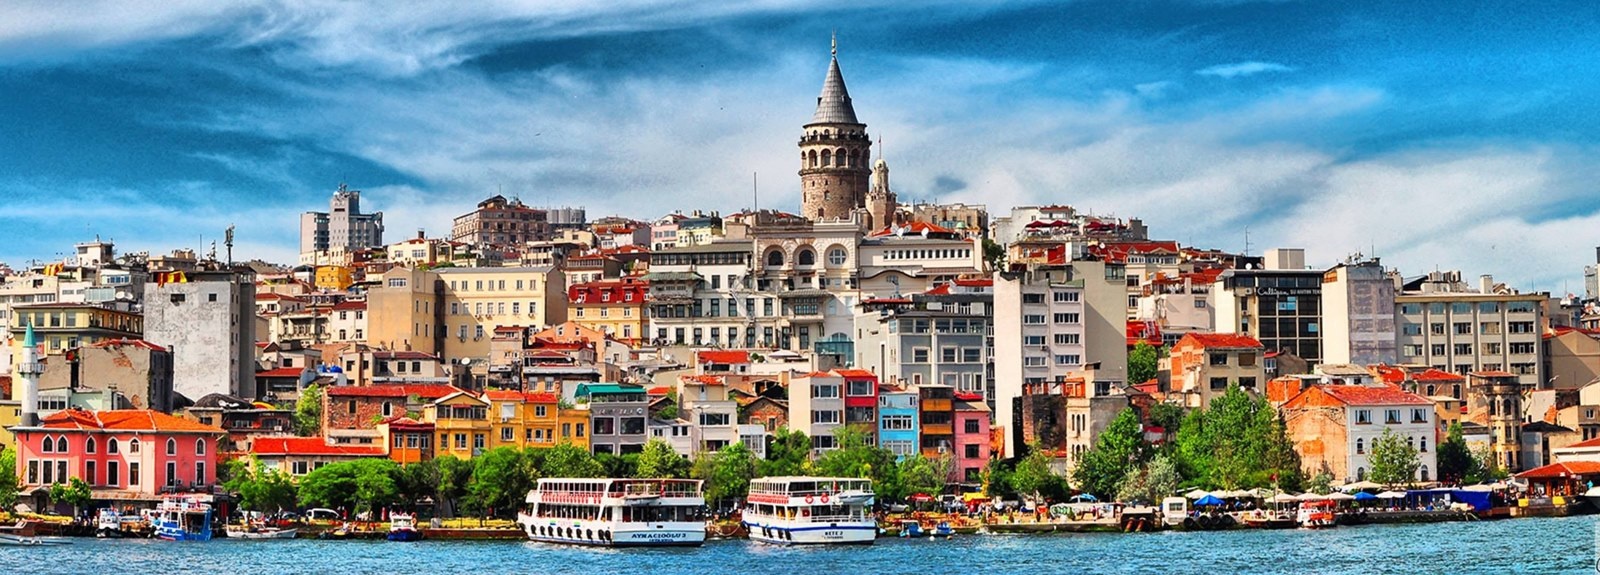 استانبول در سطح بین المللی به چه چیزی معروف است؟